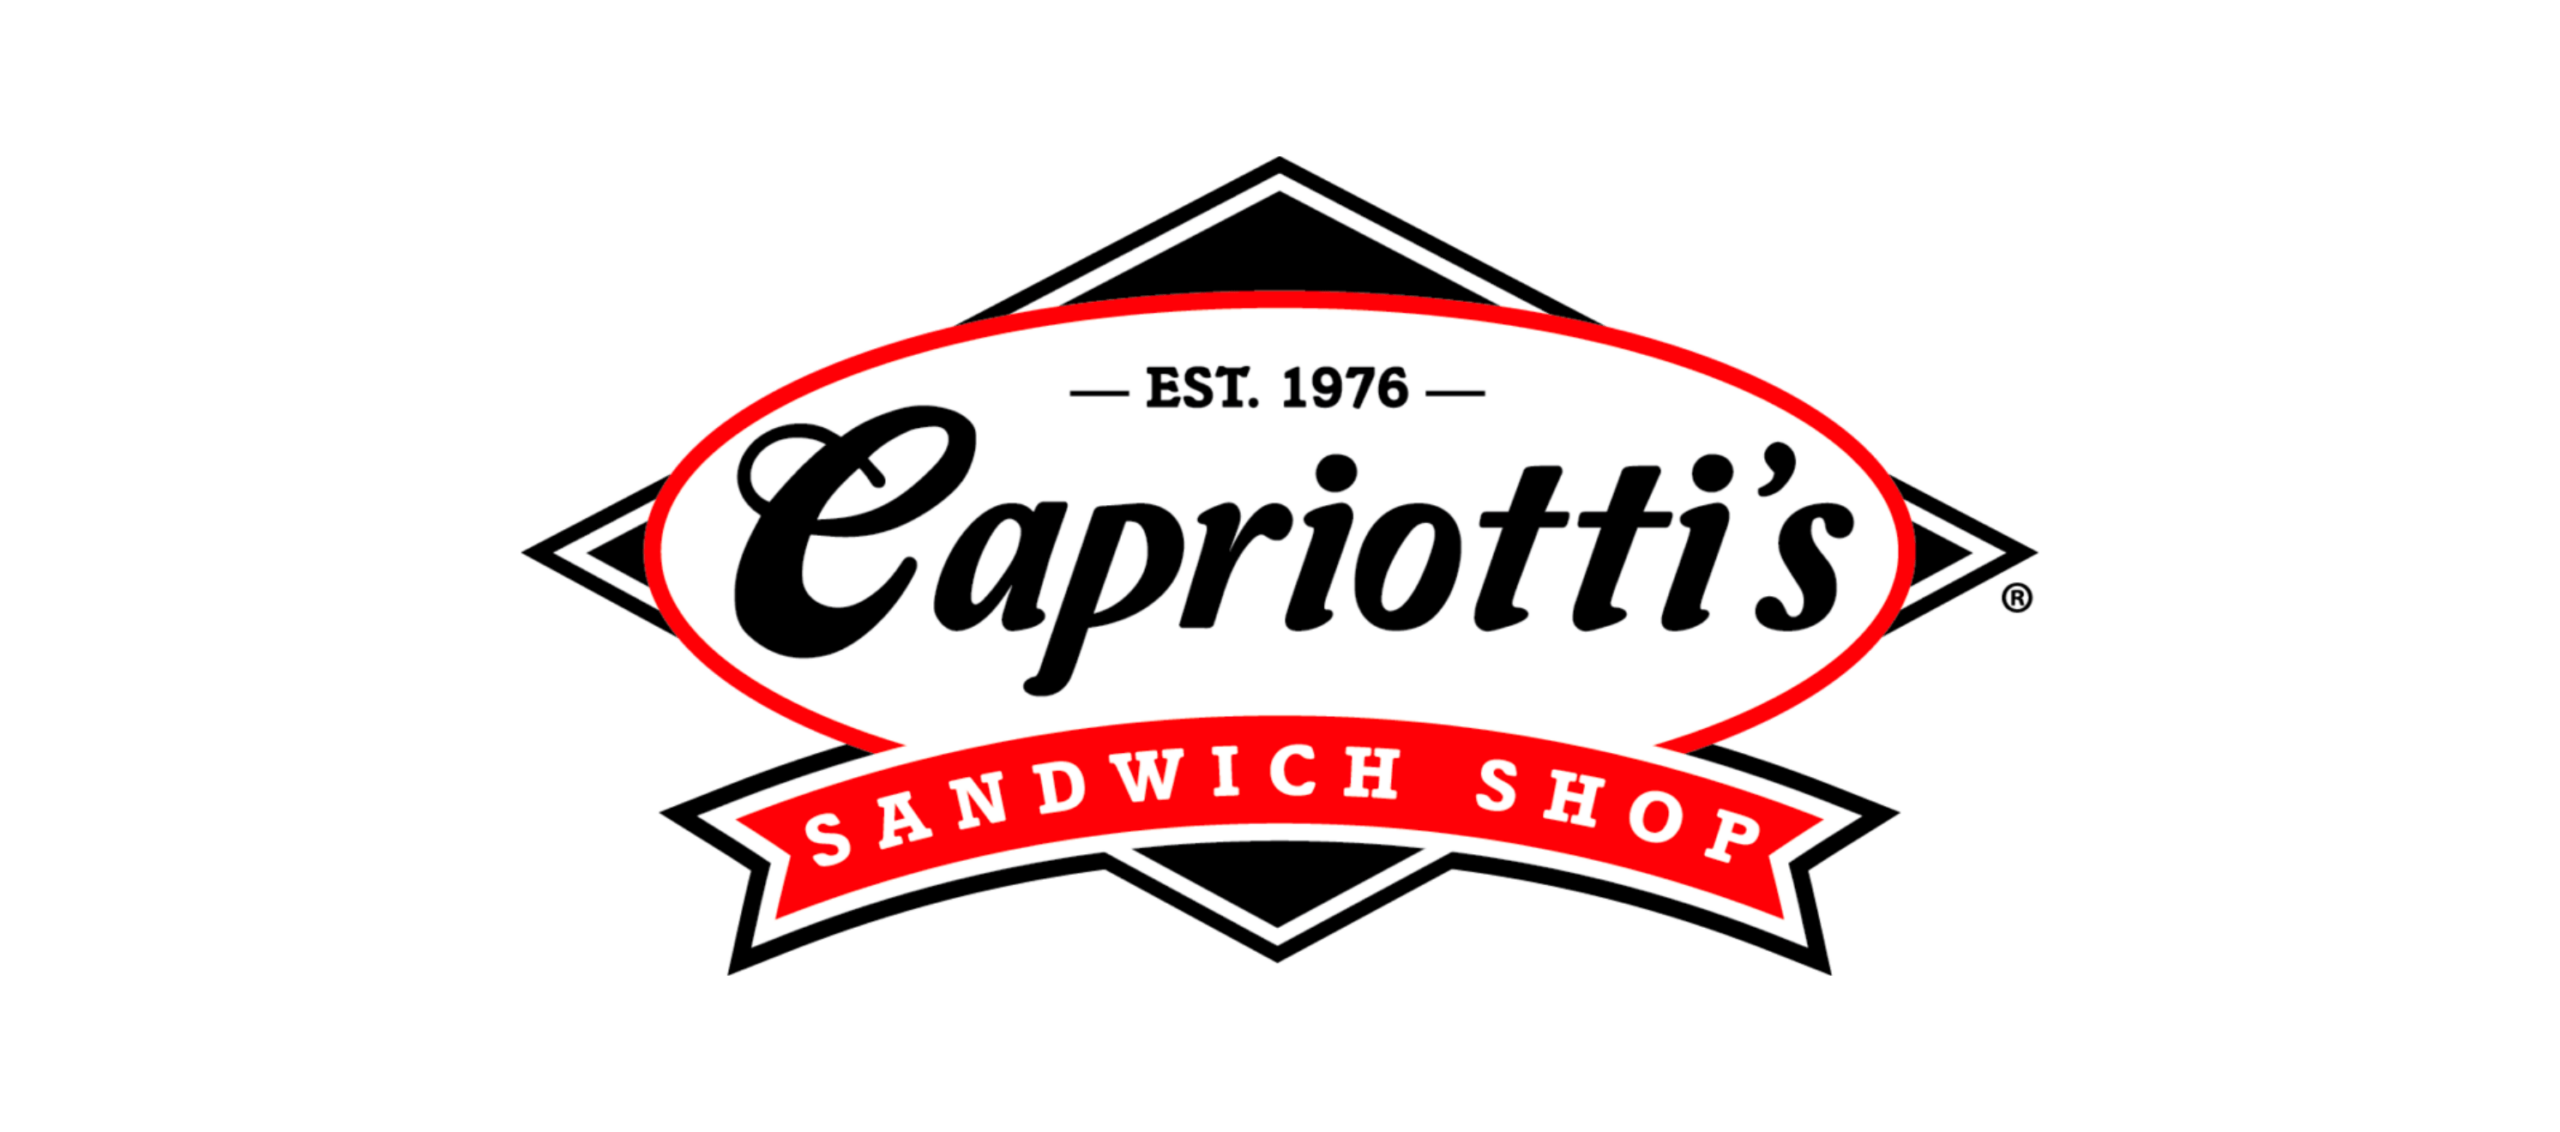 capriottis